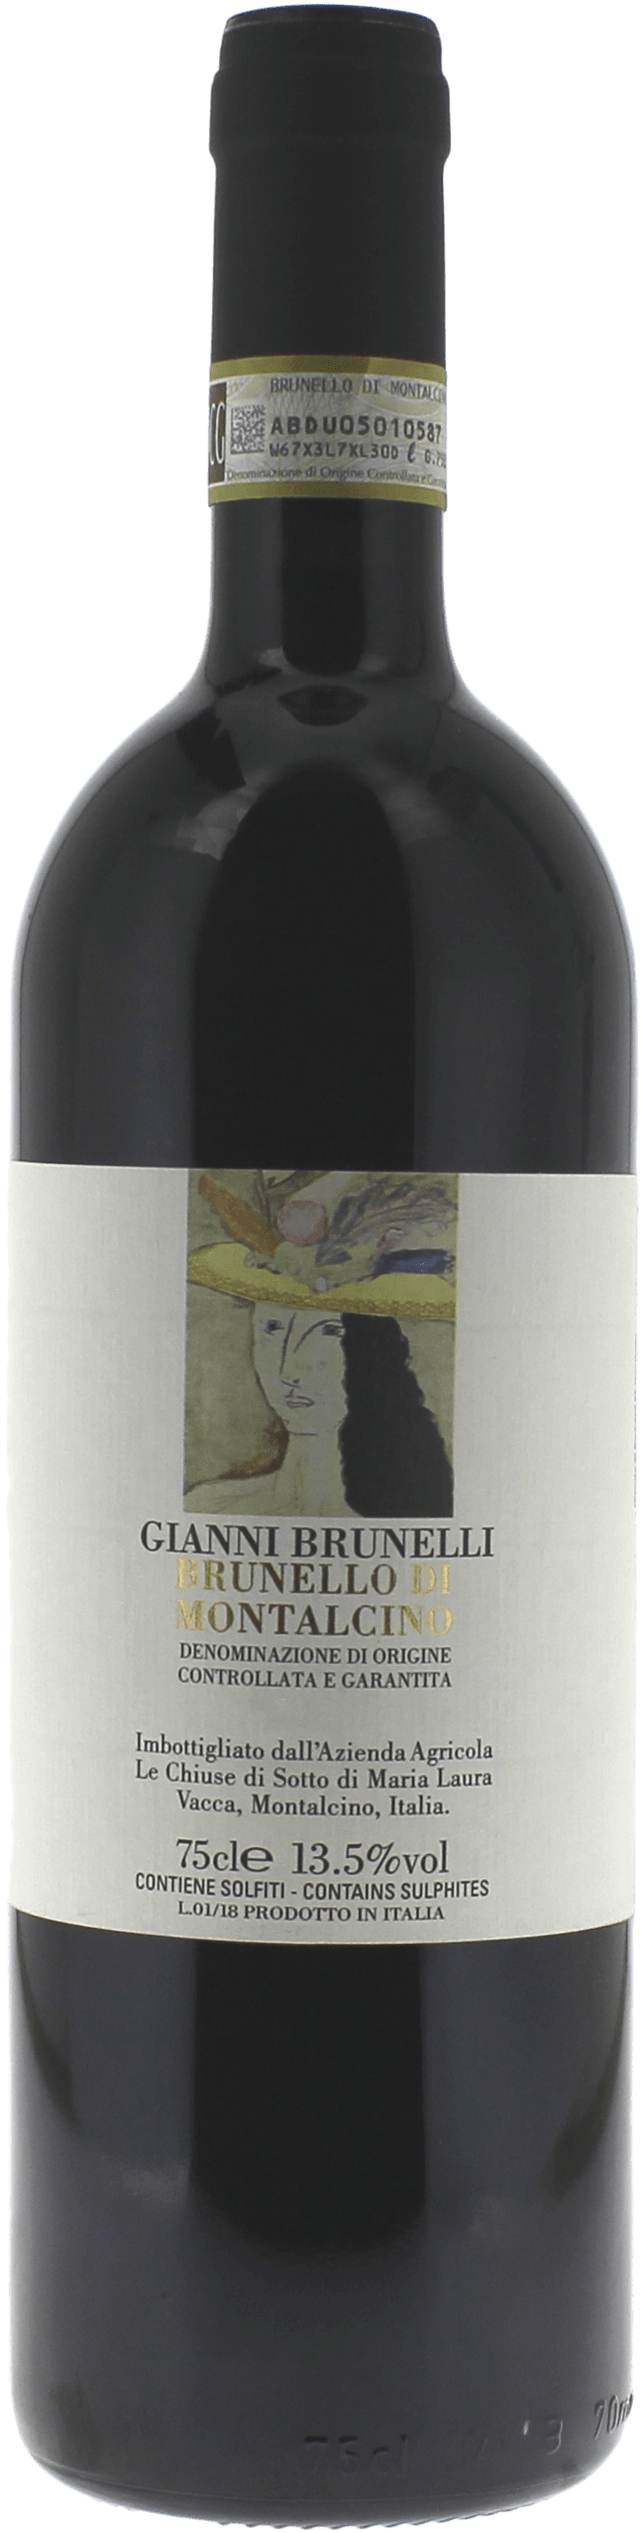 Gianni brunelli - brunello di montalcino brunello - brunello di montalcino 2014  , Vin italien